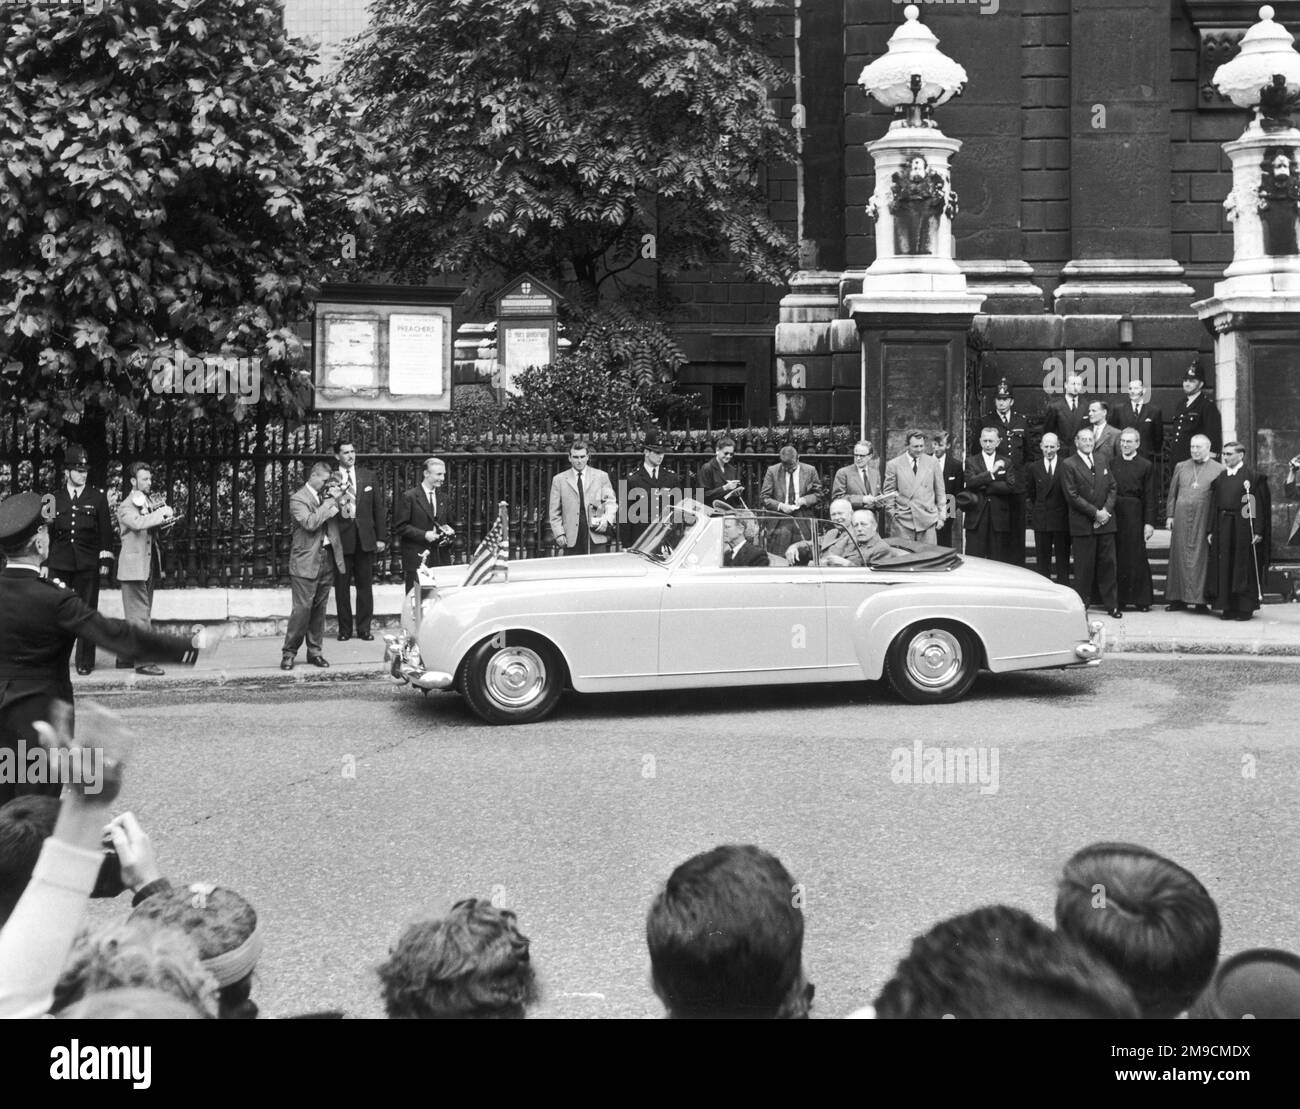 DWIGHT EISENHOWER fotografierte mit Harold Macmillan vor St. Paul's Cathedral während eines diplomatischen Besuchs in Großbritannien. Beachten Sie Canon Collins im Hintergrund. Stockfoto